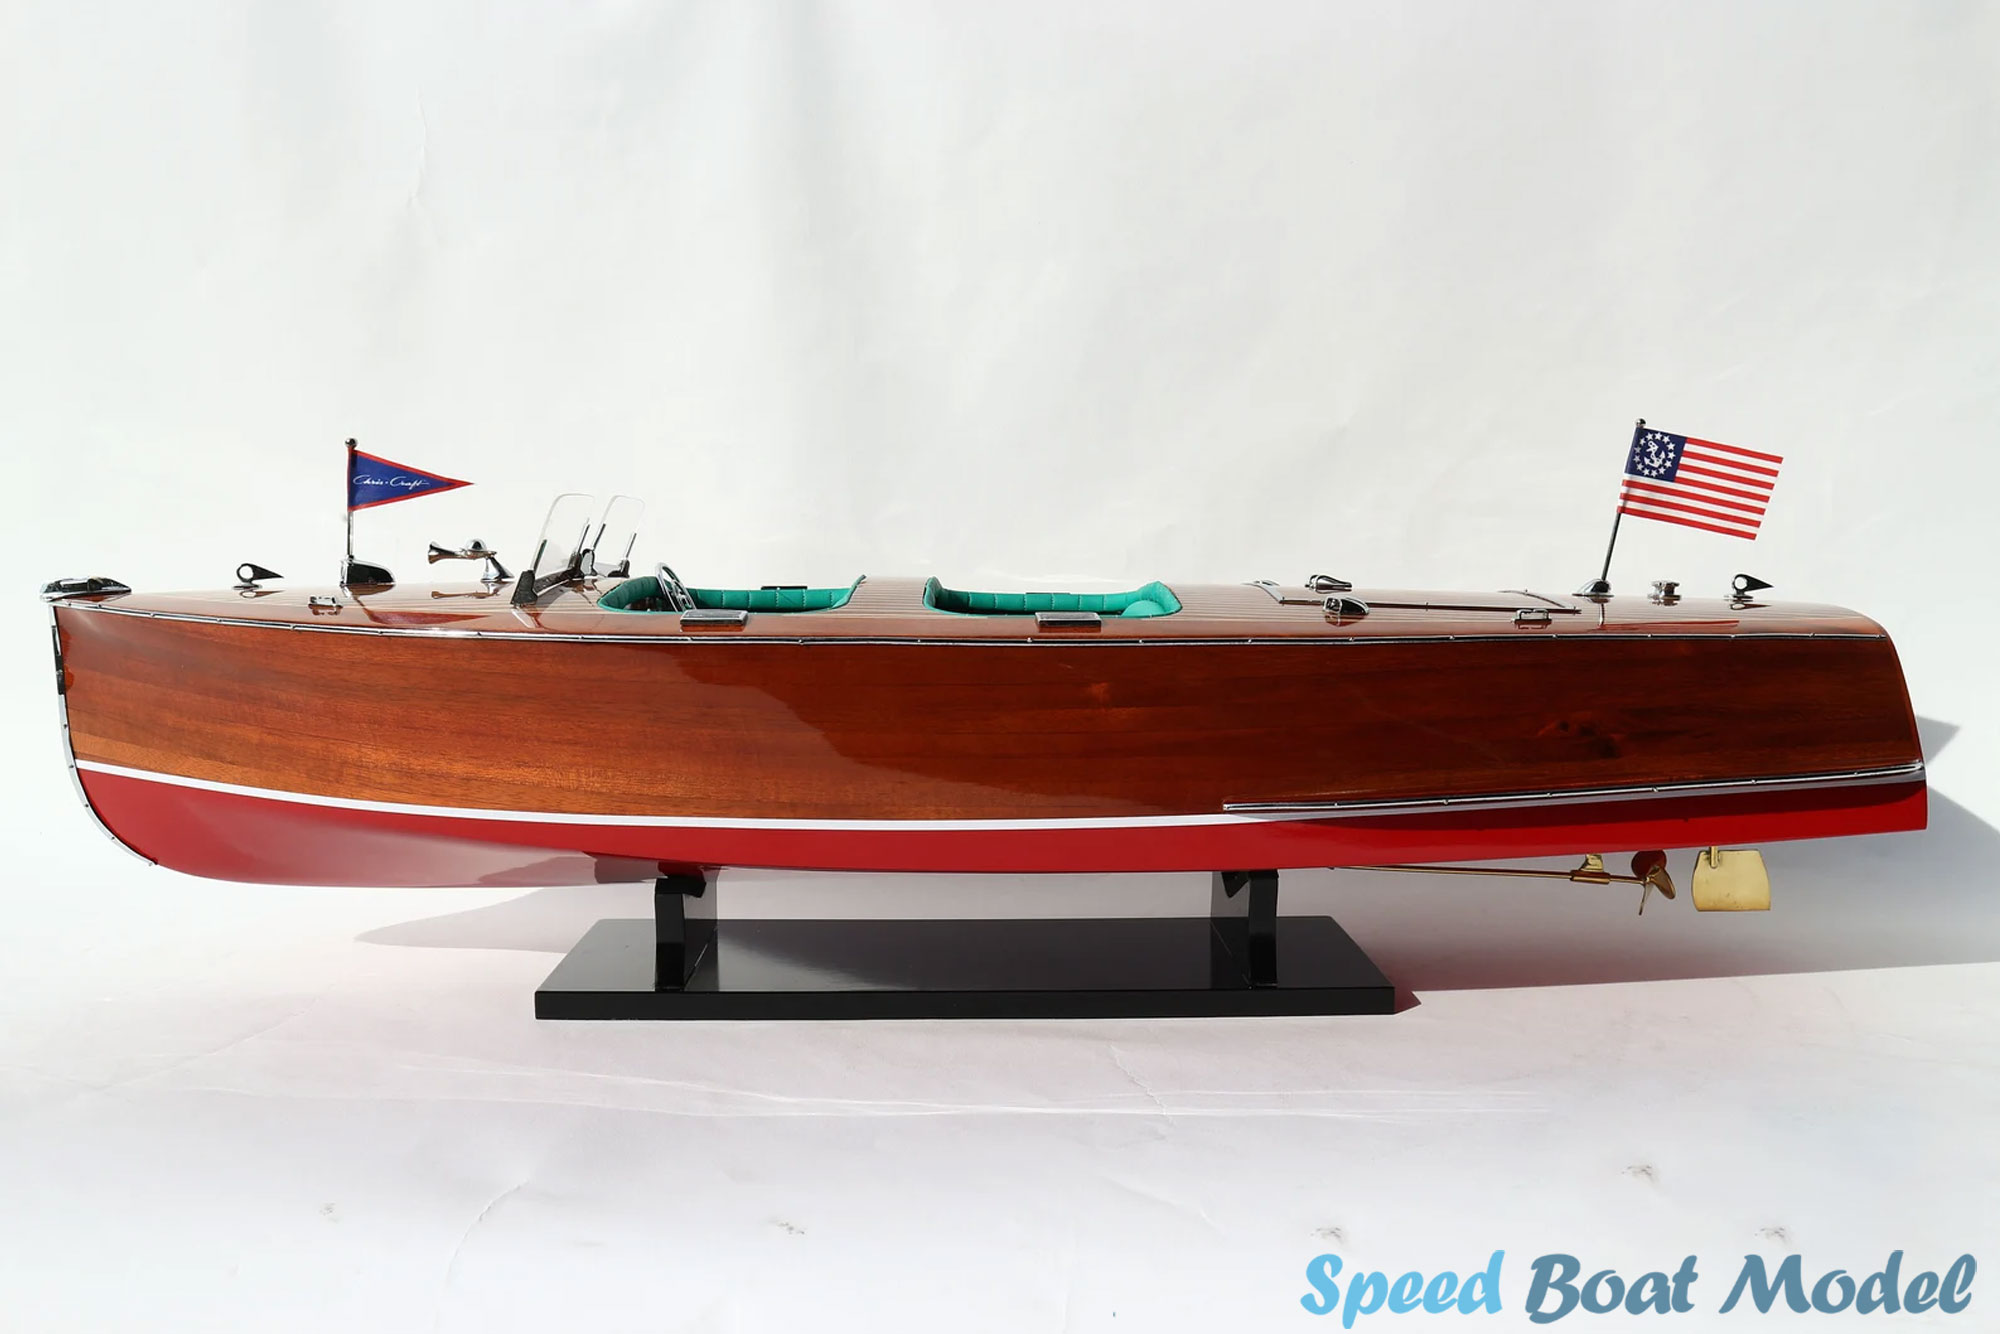 Chris Craft Barrel Back Speed Boat Model 32.6"